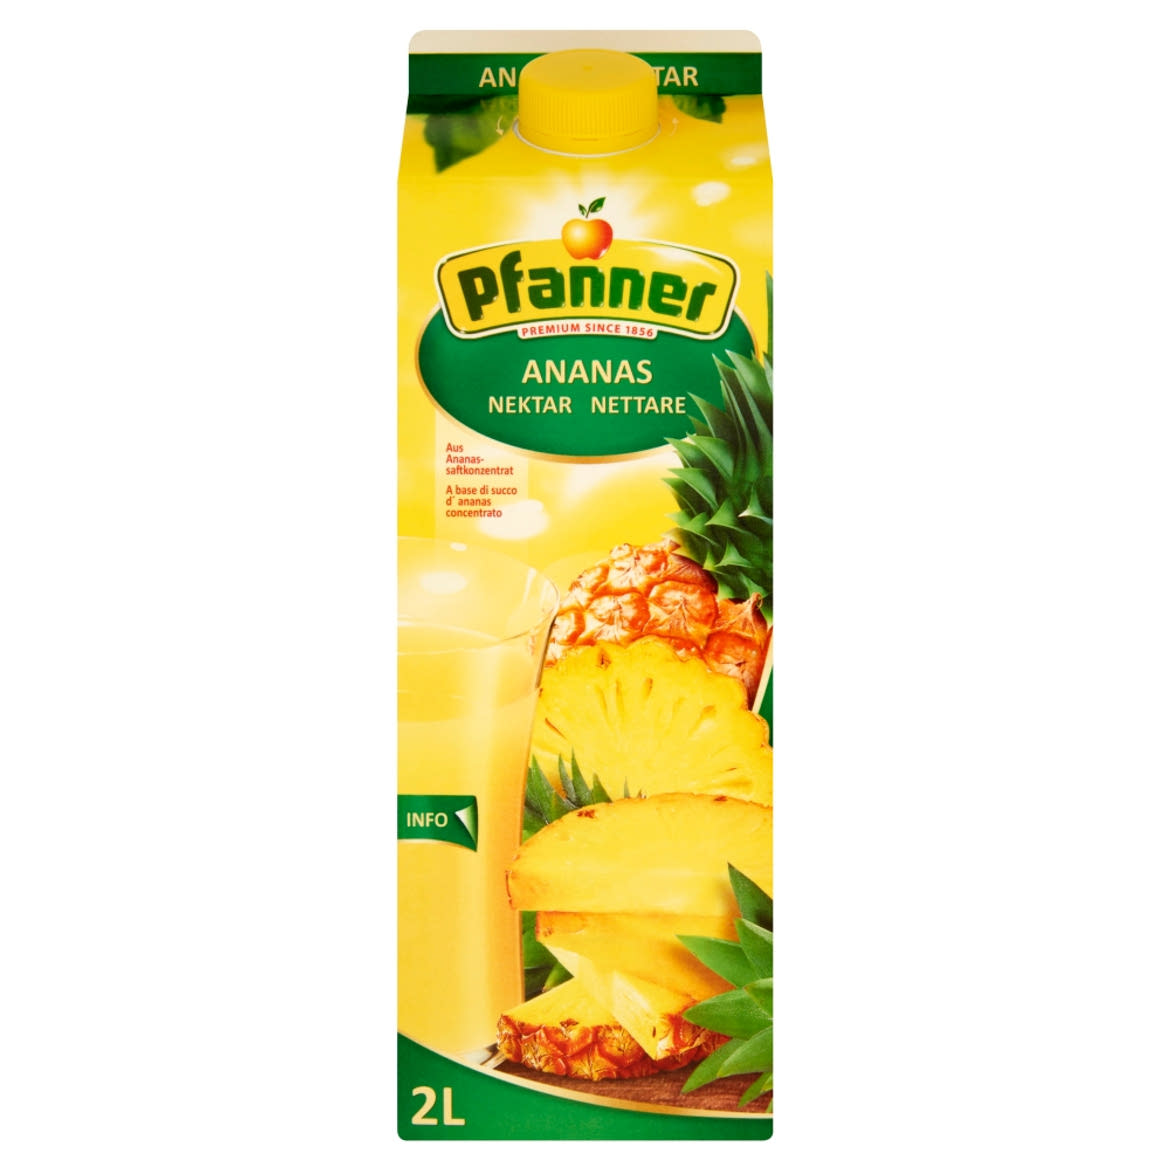 Pfanner ananásznektár ananászlé-koncentrátumból